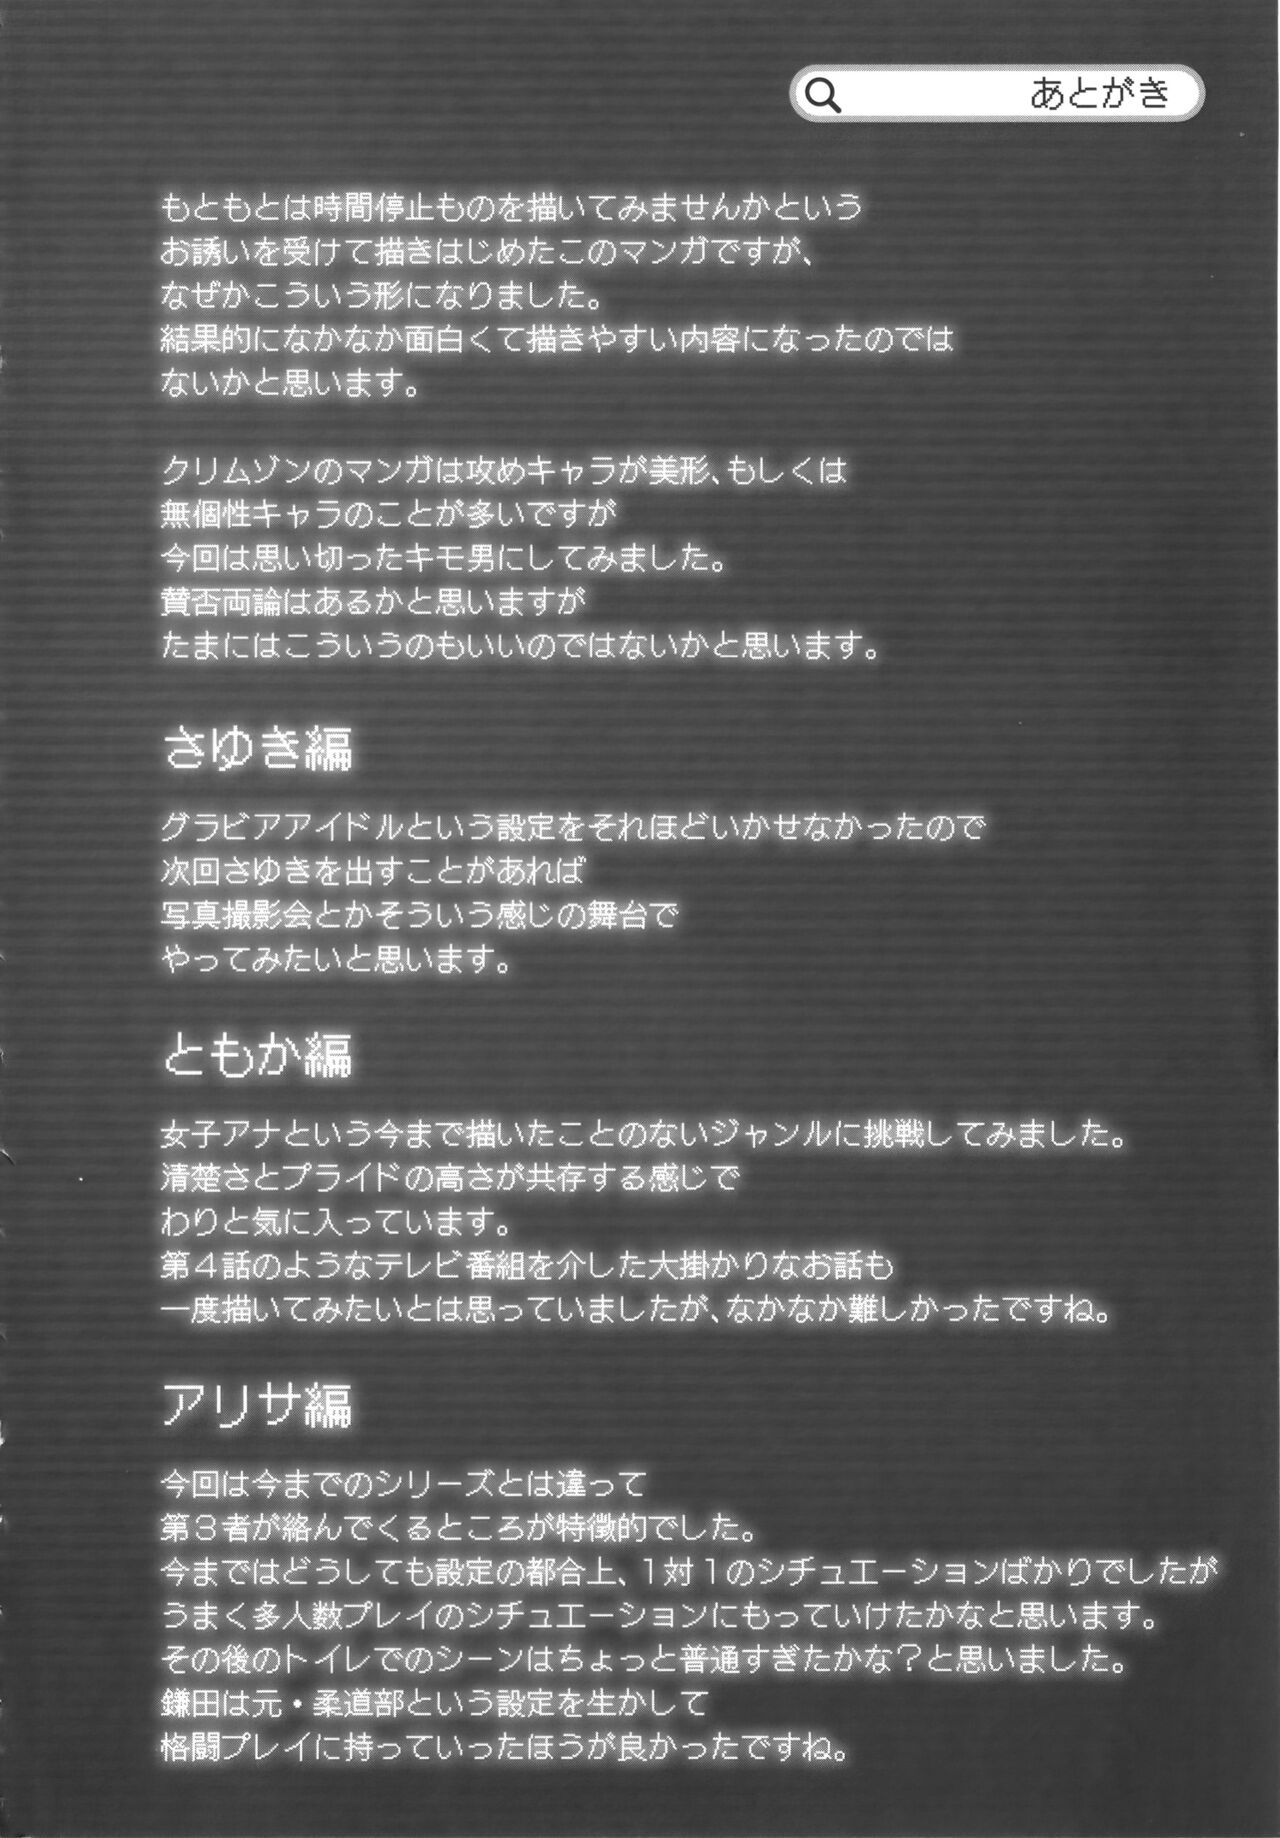 [Crimson] Idol Kyousei Sousa Vol.1 Smartphone de Meireishita Koto ga Genjitsu ni [Complete Edition] 269